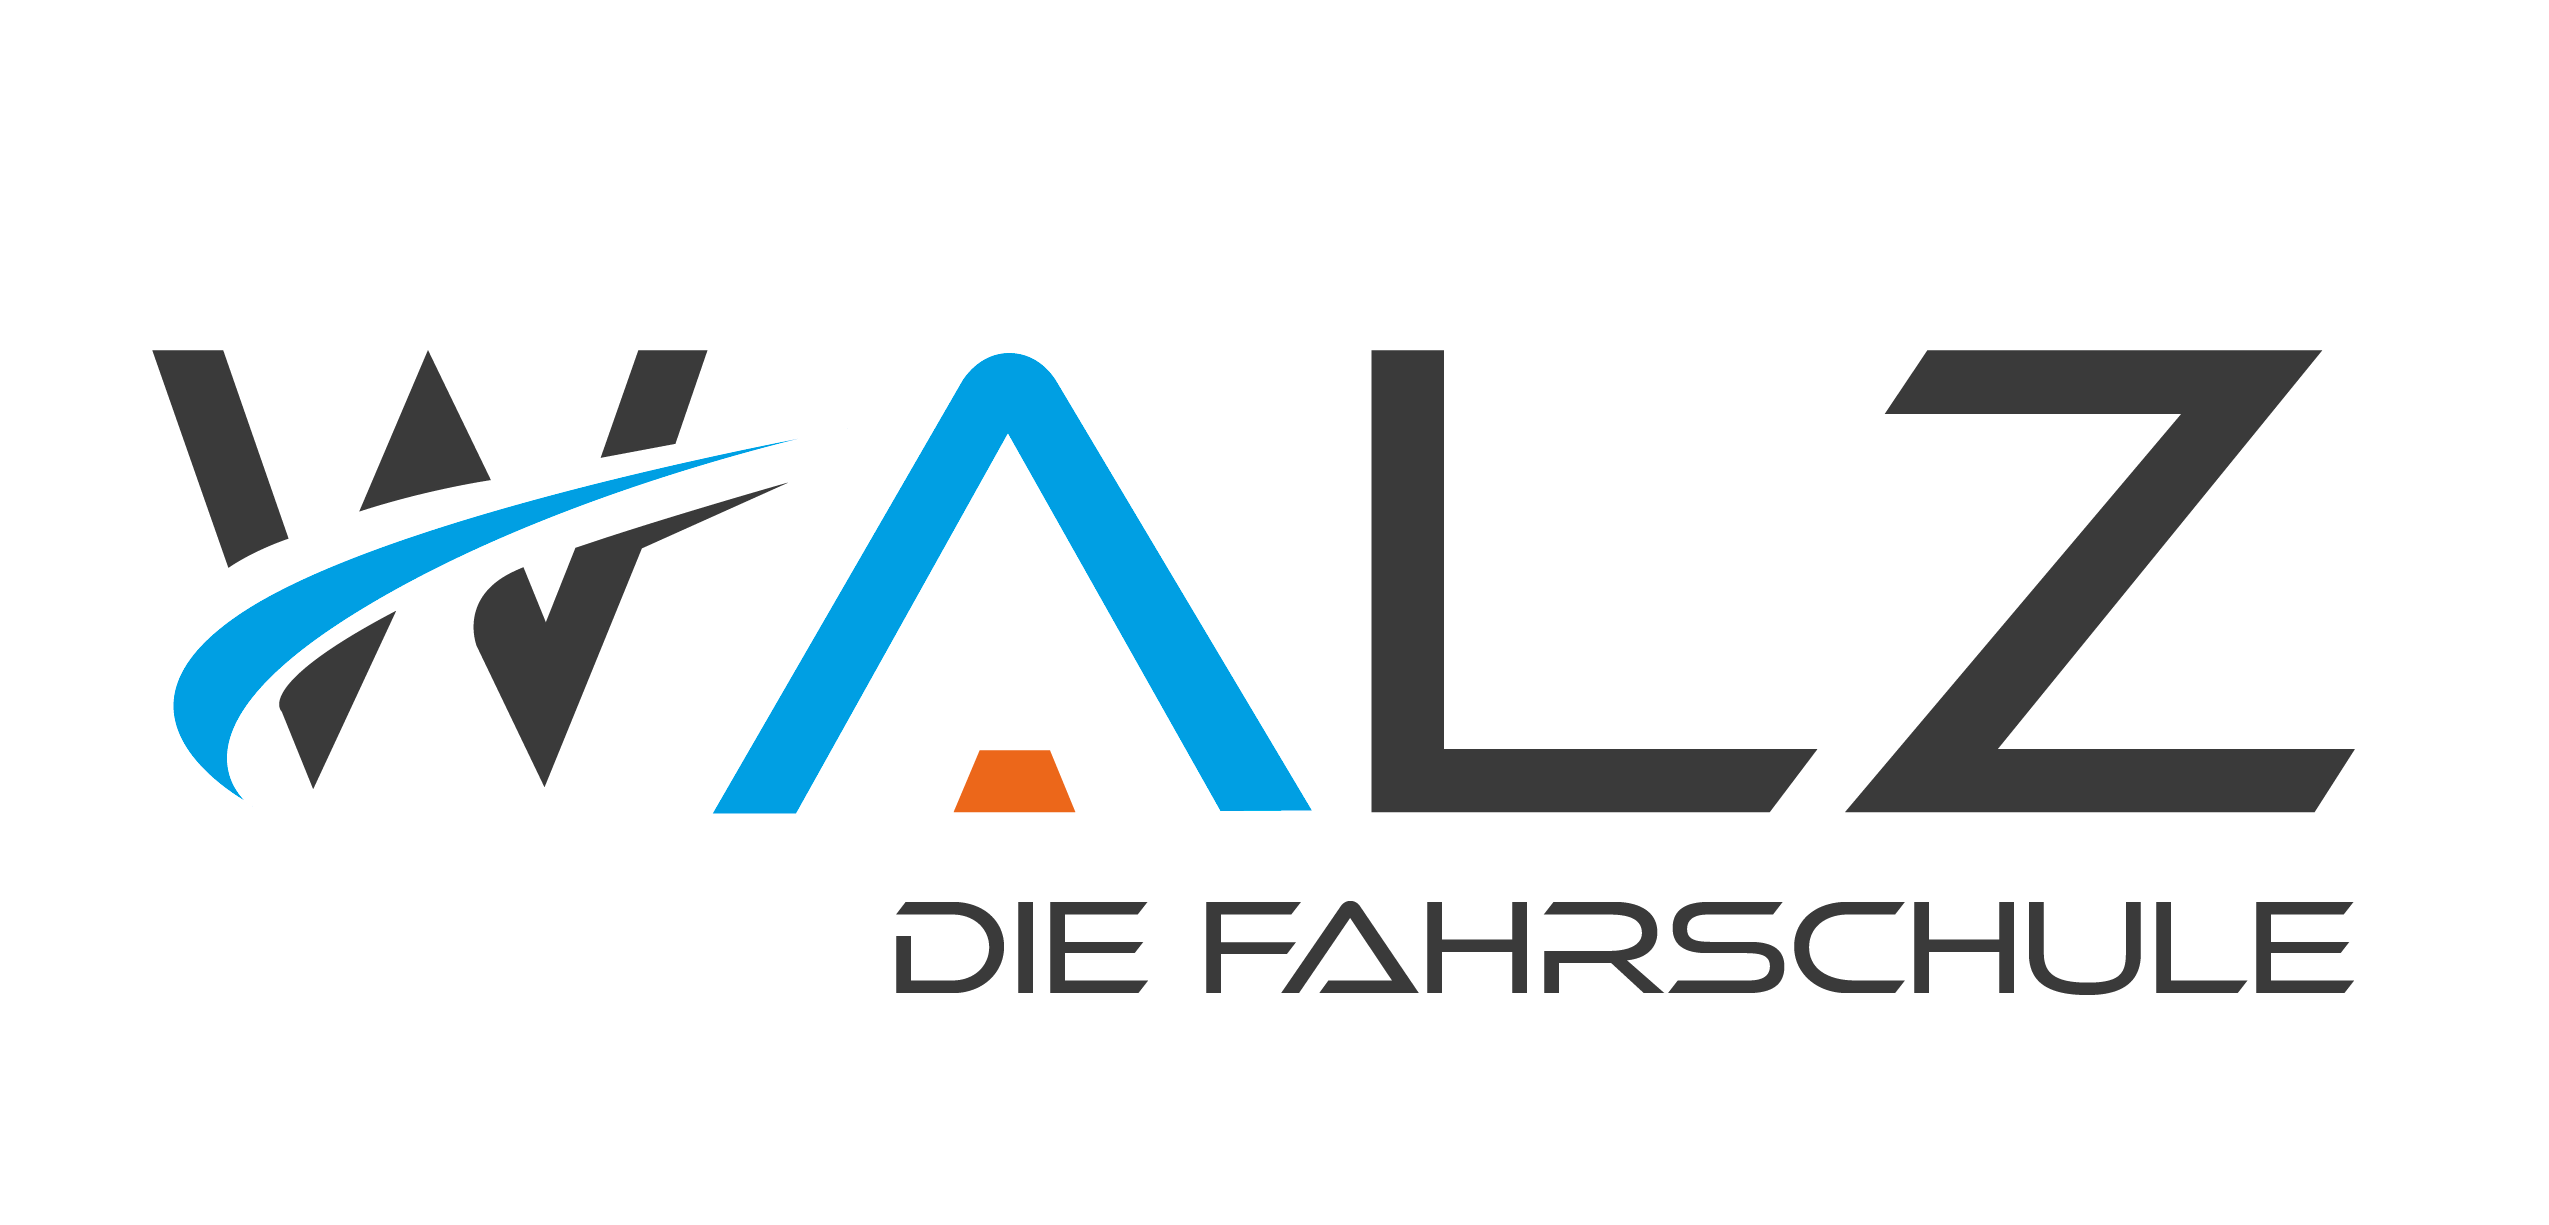 Fahrschule Walz Logo